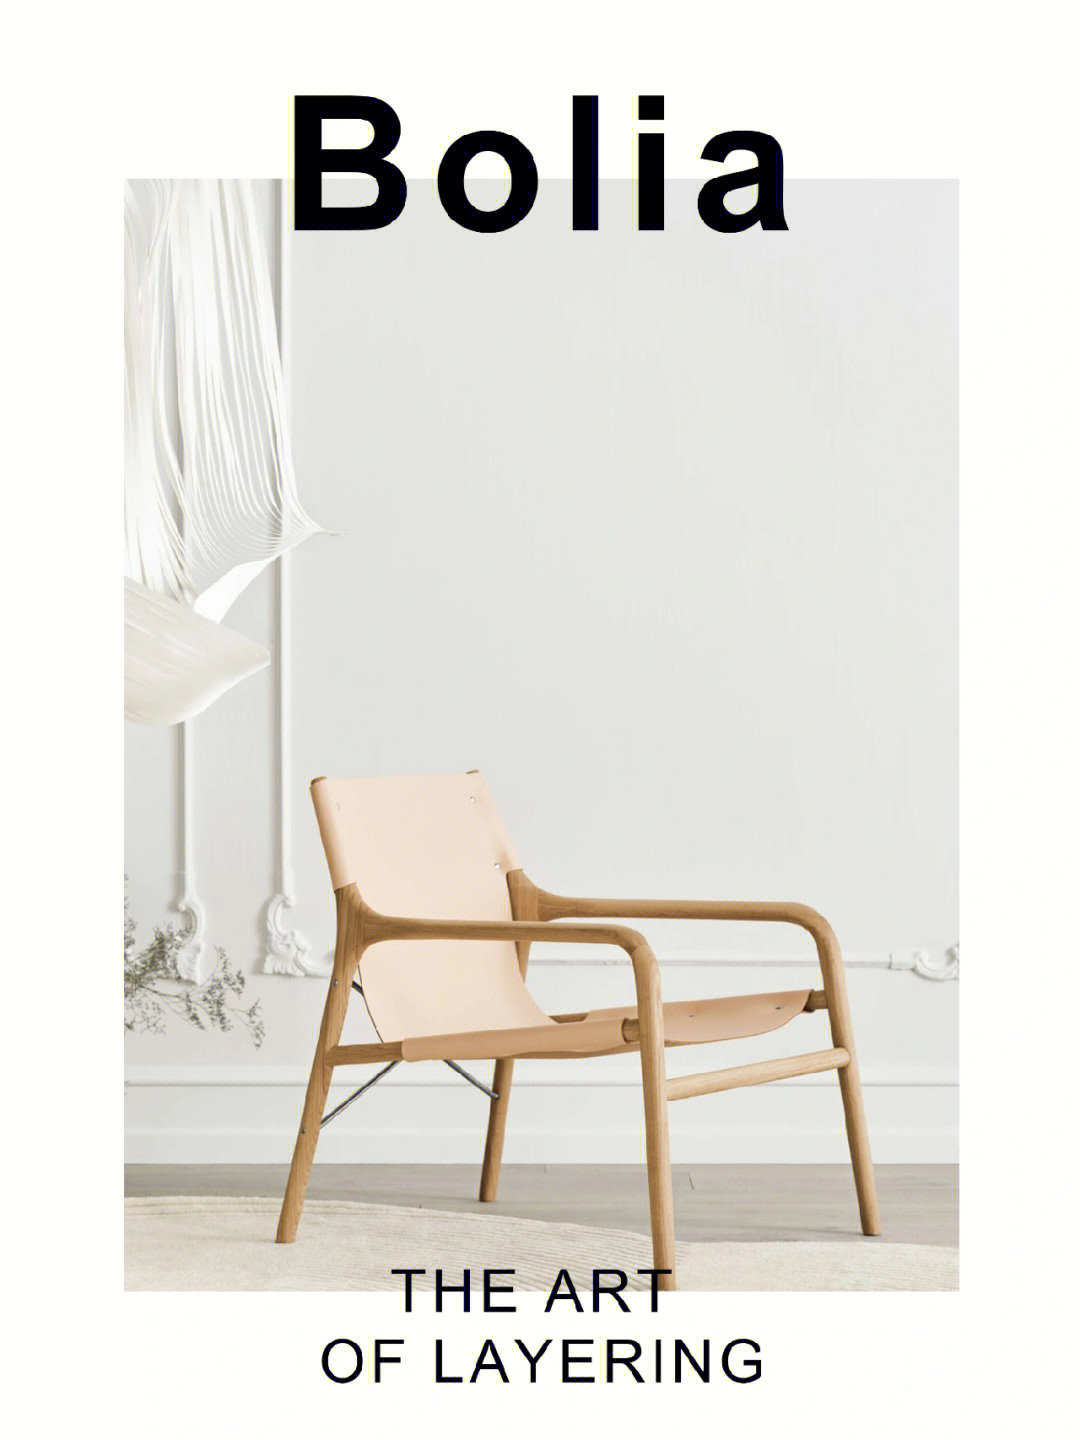 提到北欧品牌的家具,bolia 是不得不提的